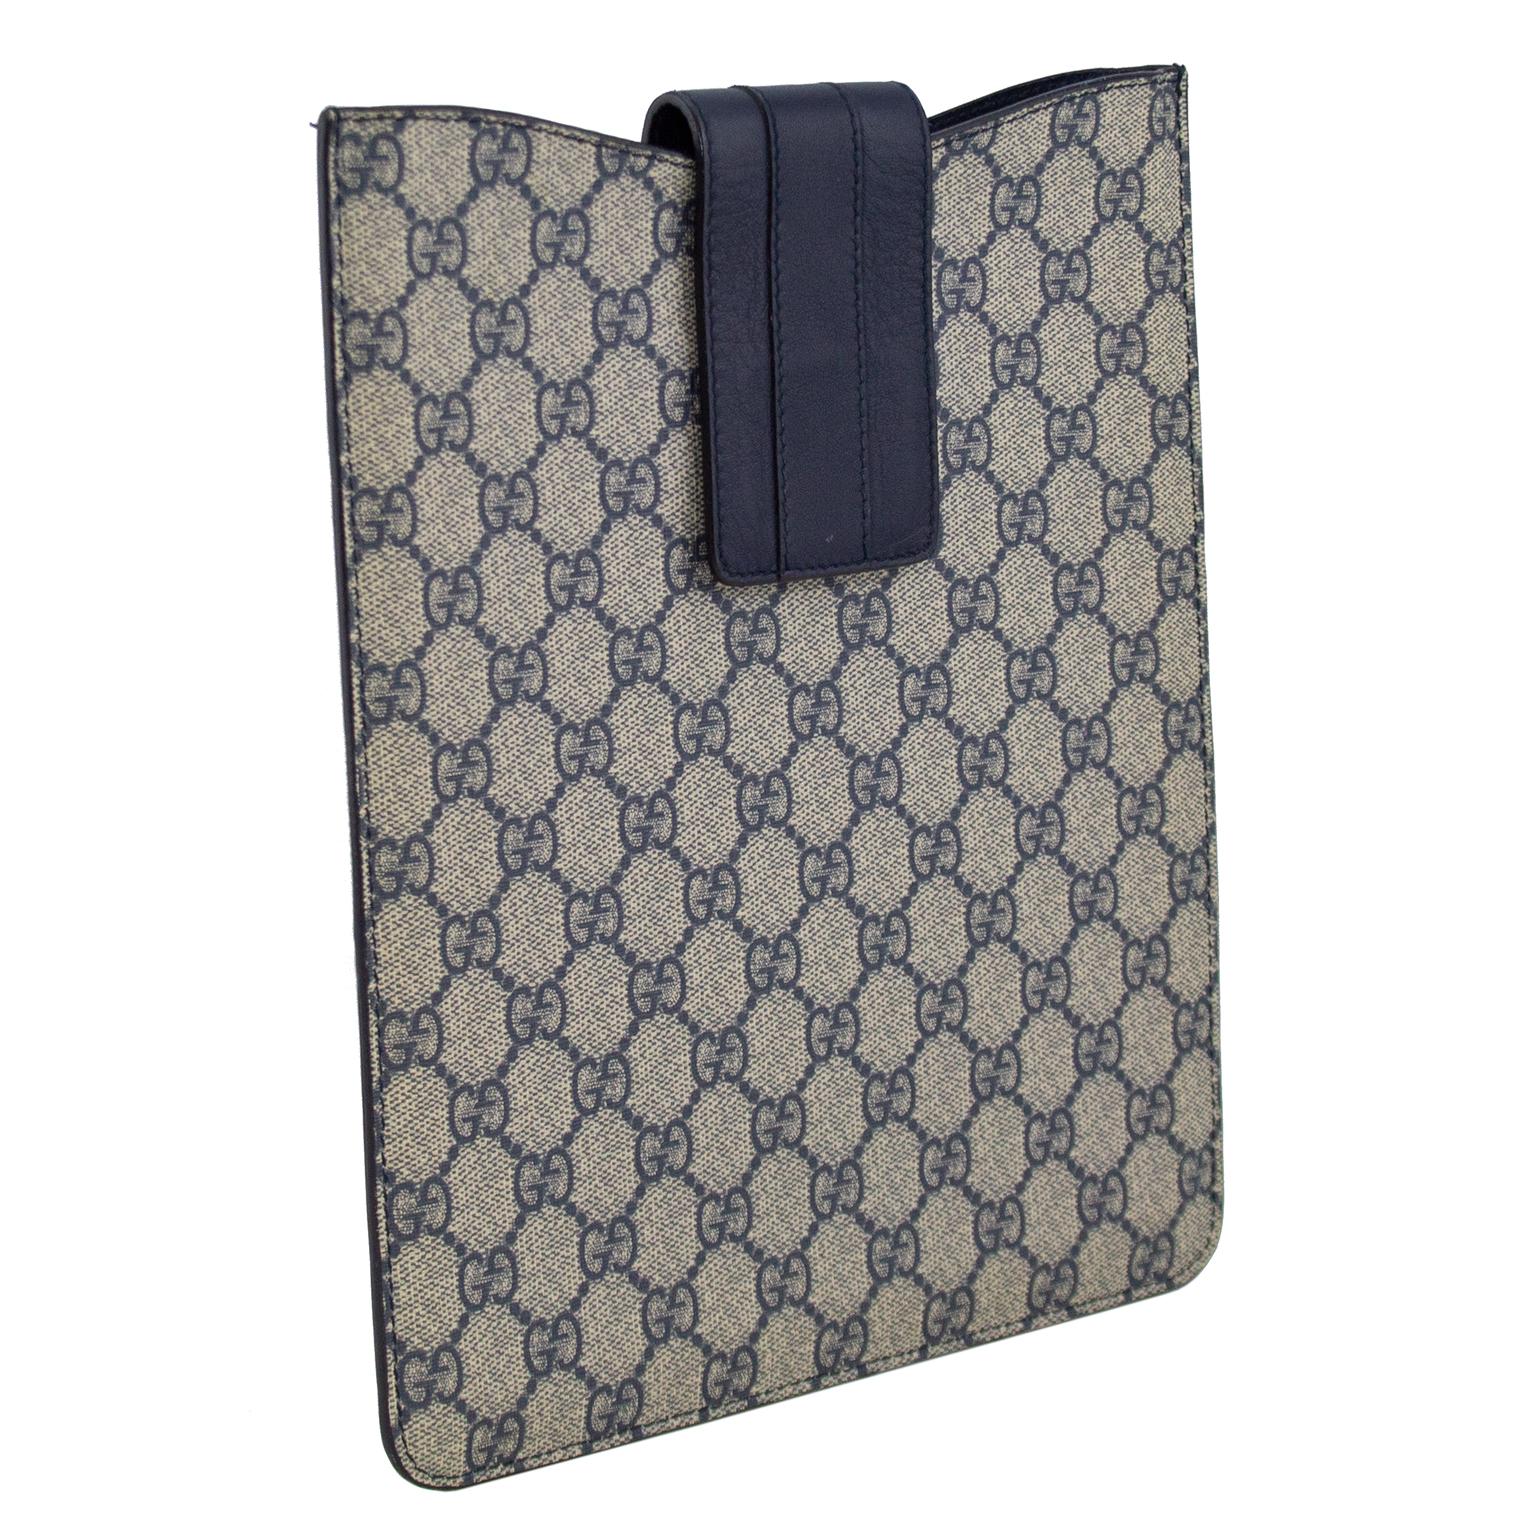 2000er Gucci iPad-Tasche/-Hülle. Marineblaues und graues All-Over-Gucci-Logo-Leder mit marineblauem Leder-Klettverschluss oben. Innenausstattung aus weichem schwarzem Wildleder. Einfache und schicke Art, Ihr iPad zu schützen. Ideal für Reisen.